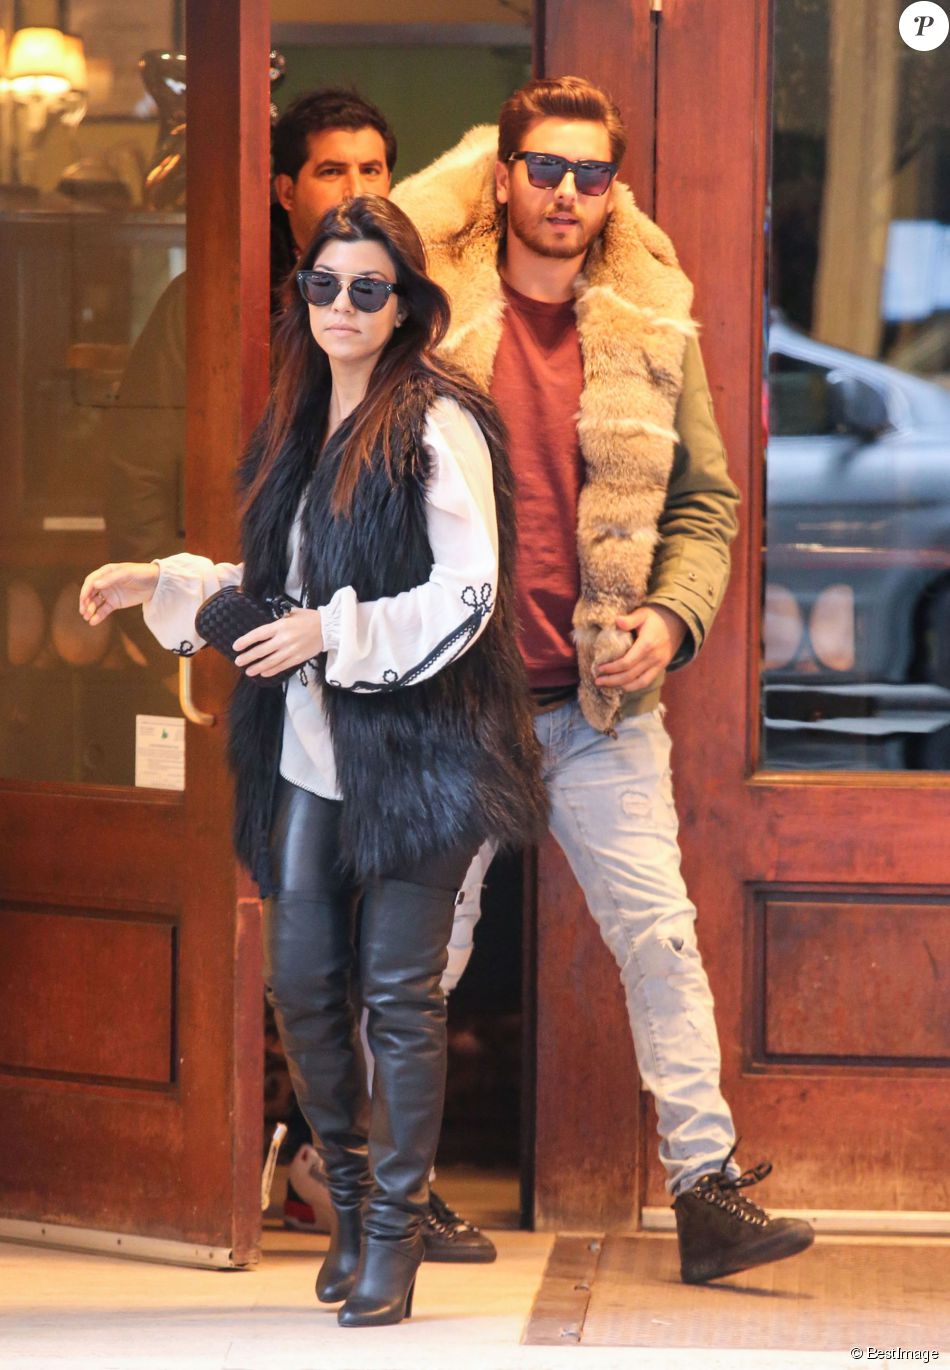  Kourtney Kardashian et Scott Disick vont d&amp;eacute;jeuner au restaurant Cipriani &amp;agrave; New York, le 24 f&amp;eacute;vrier 2014.  